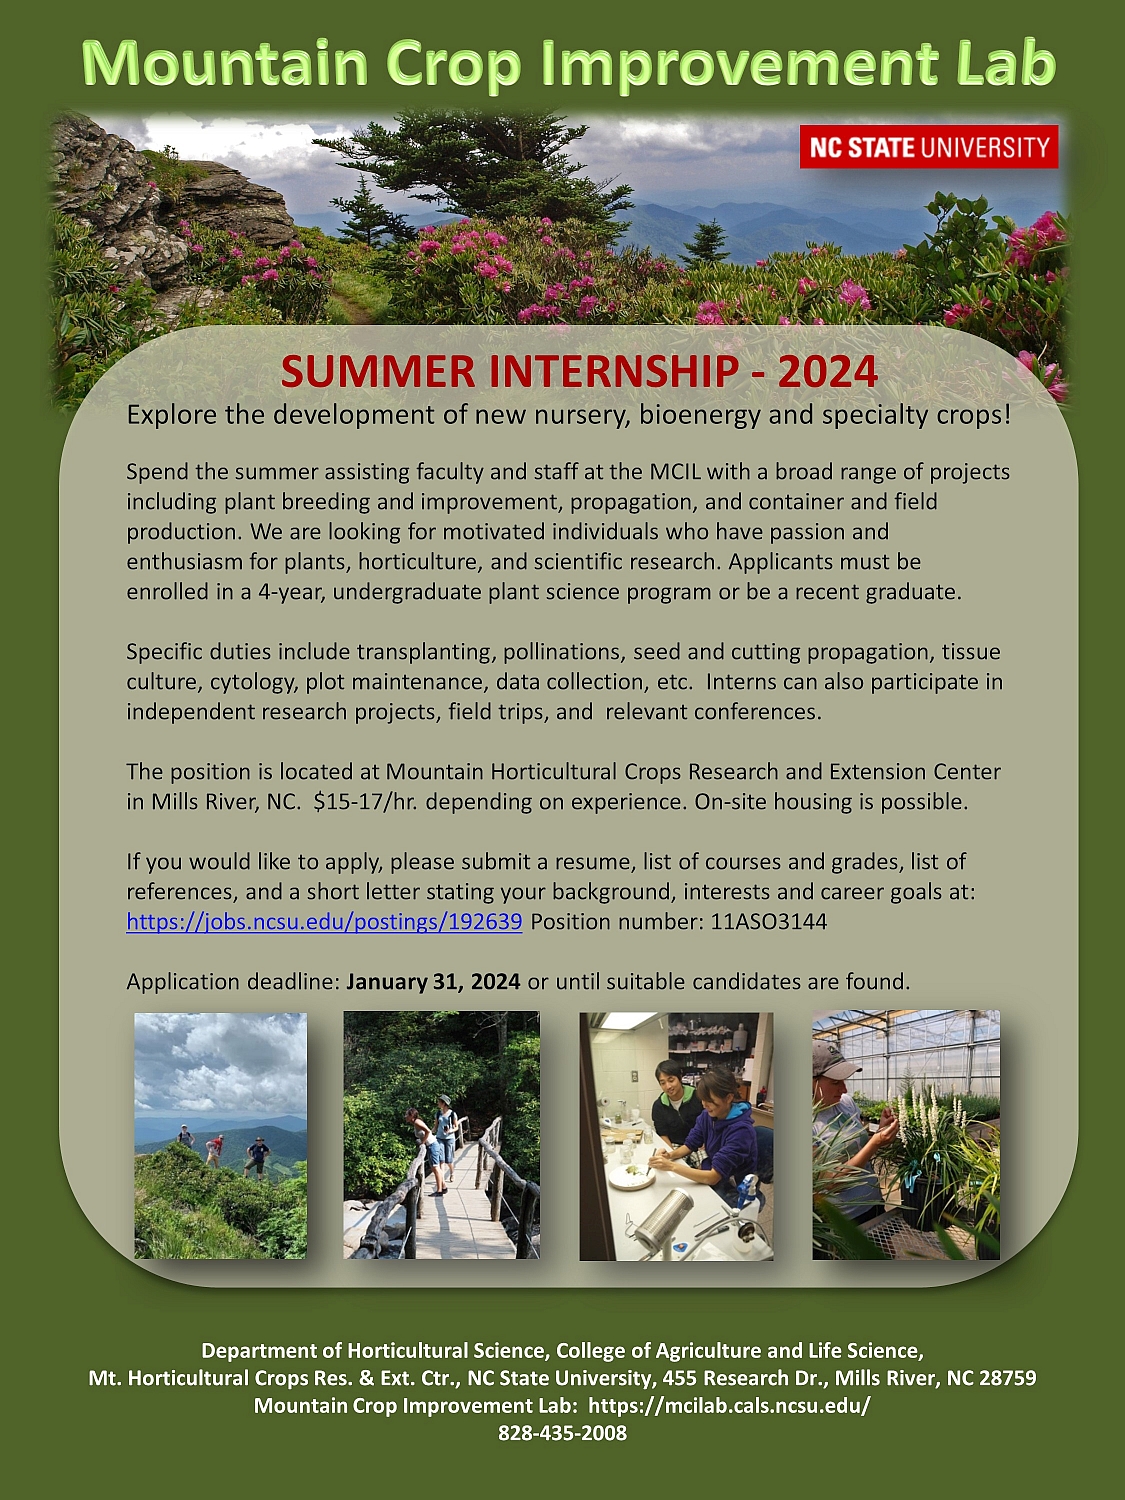 Summer internship 2024 flyer image